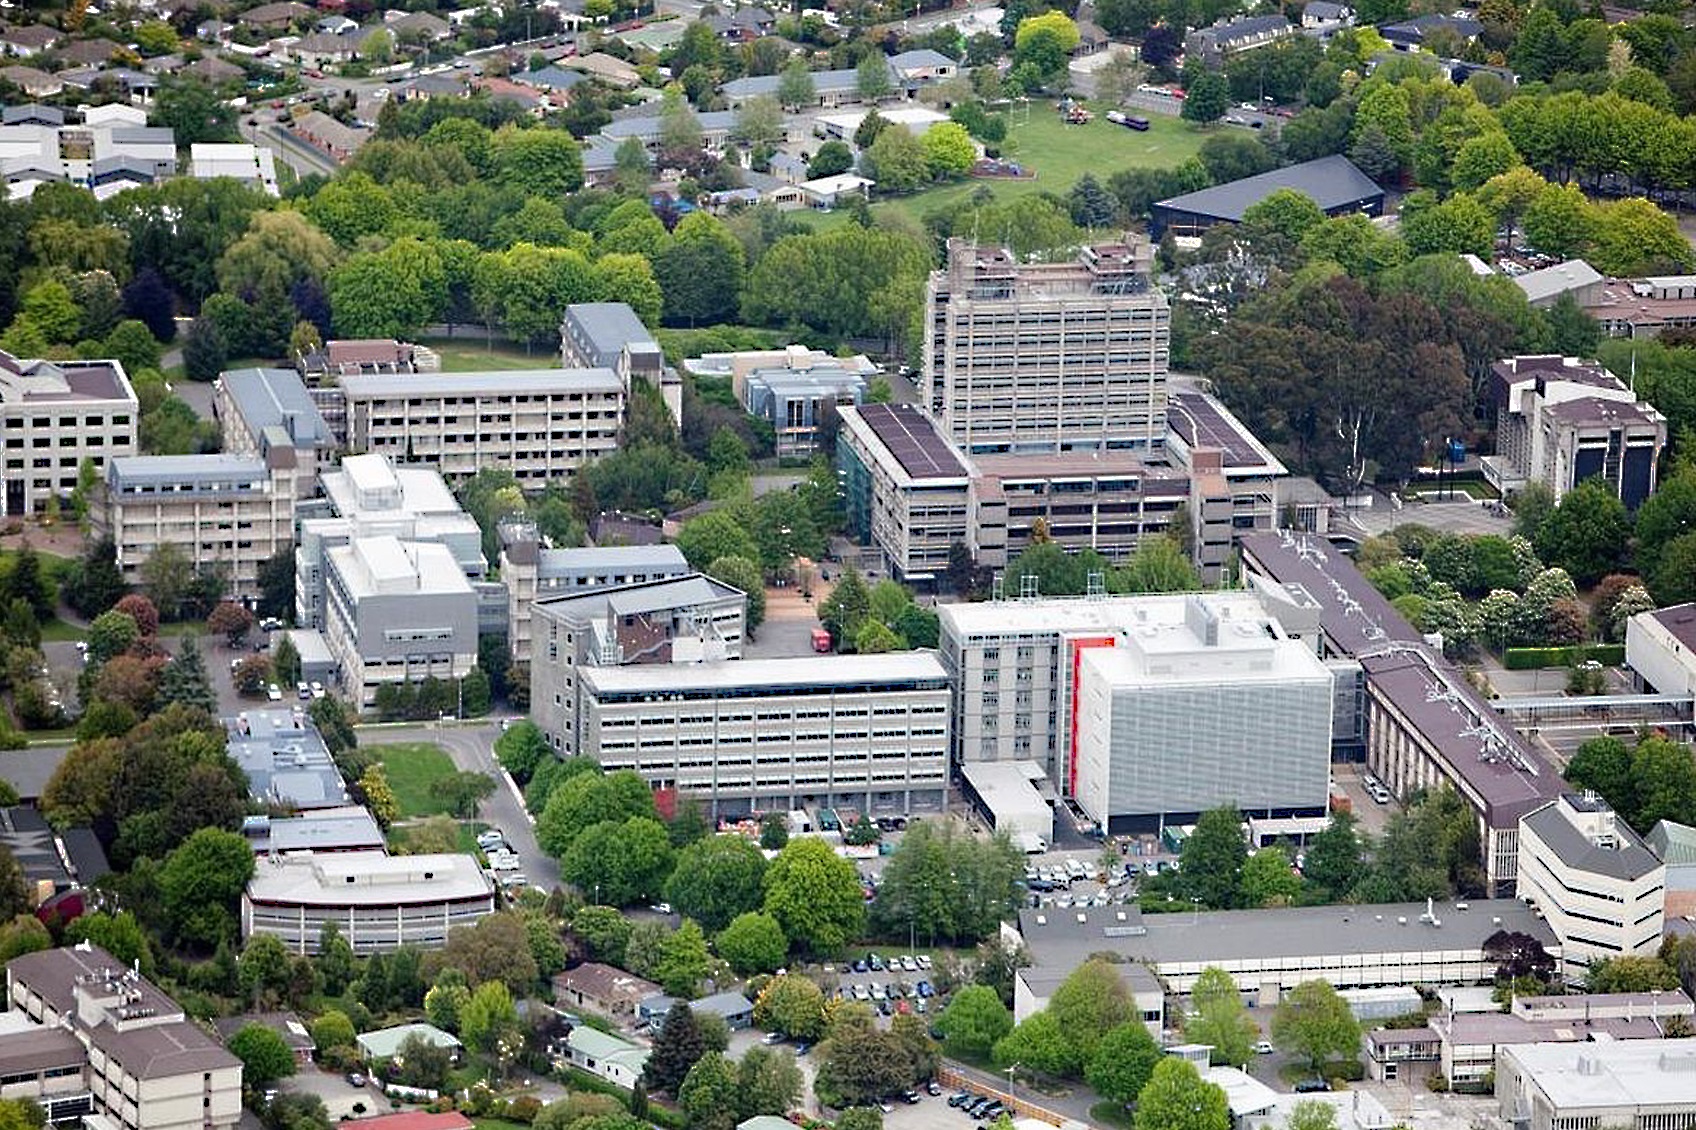 جامعة كانتربيري إحدى أشهر الجامعات دوليًّا على مستوى البحوث والتدريس، وثالث أفضل جامعات نيوزلند (مواقع التواصل)